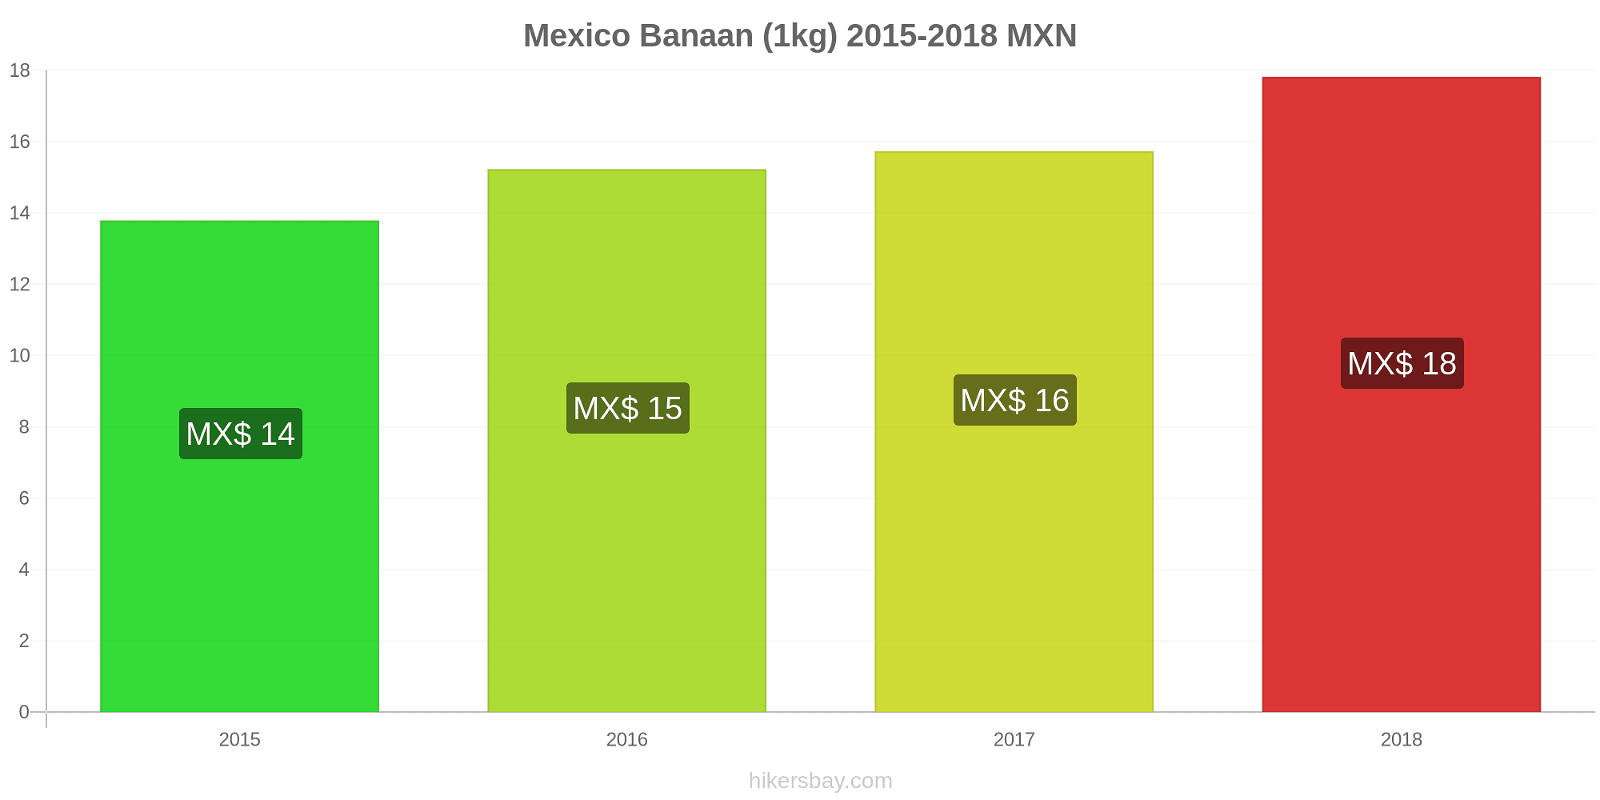 Mexico prijswijzigingen Bananen (1kg) hikersbay.com